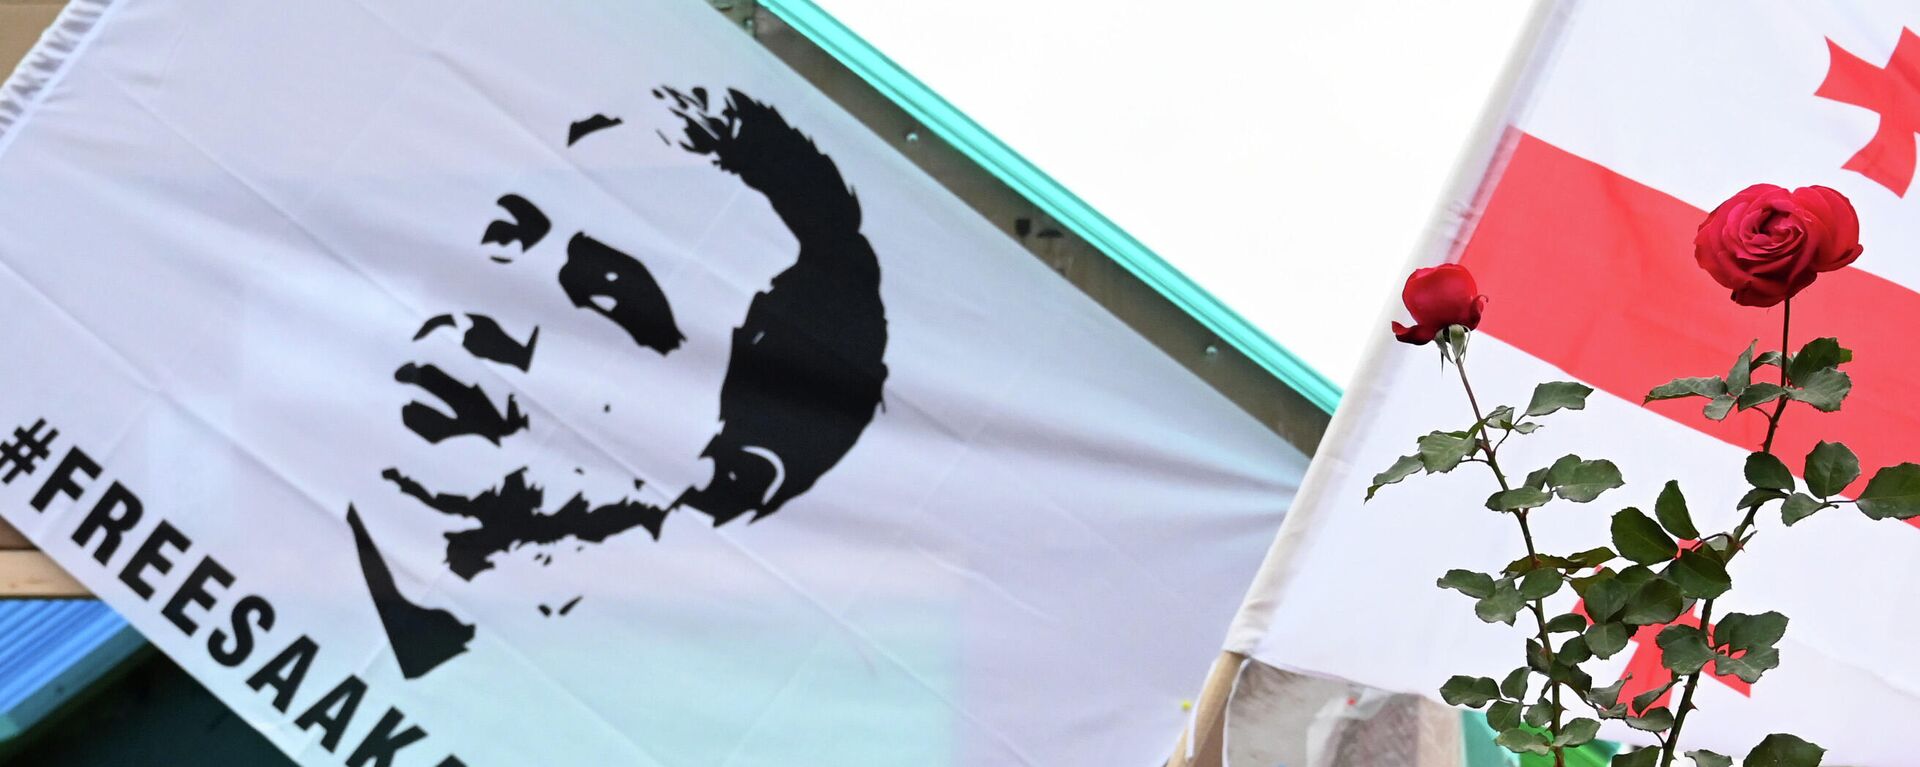 Портрет Саакашвили на плакате протестующей оппозиции и его сторонников из ЕНД - Sputnik Грузия, 1920, 11.11.2021